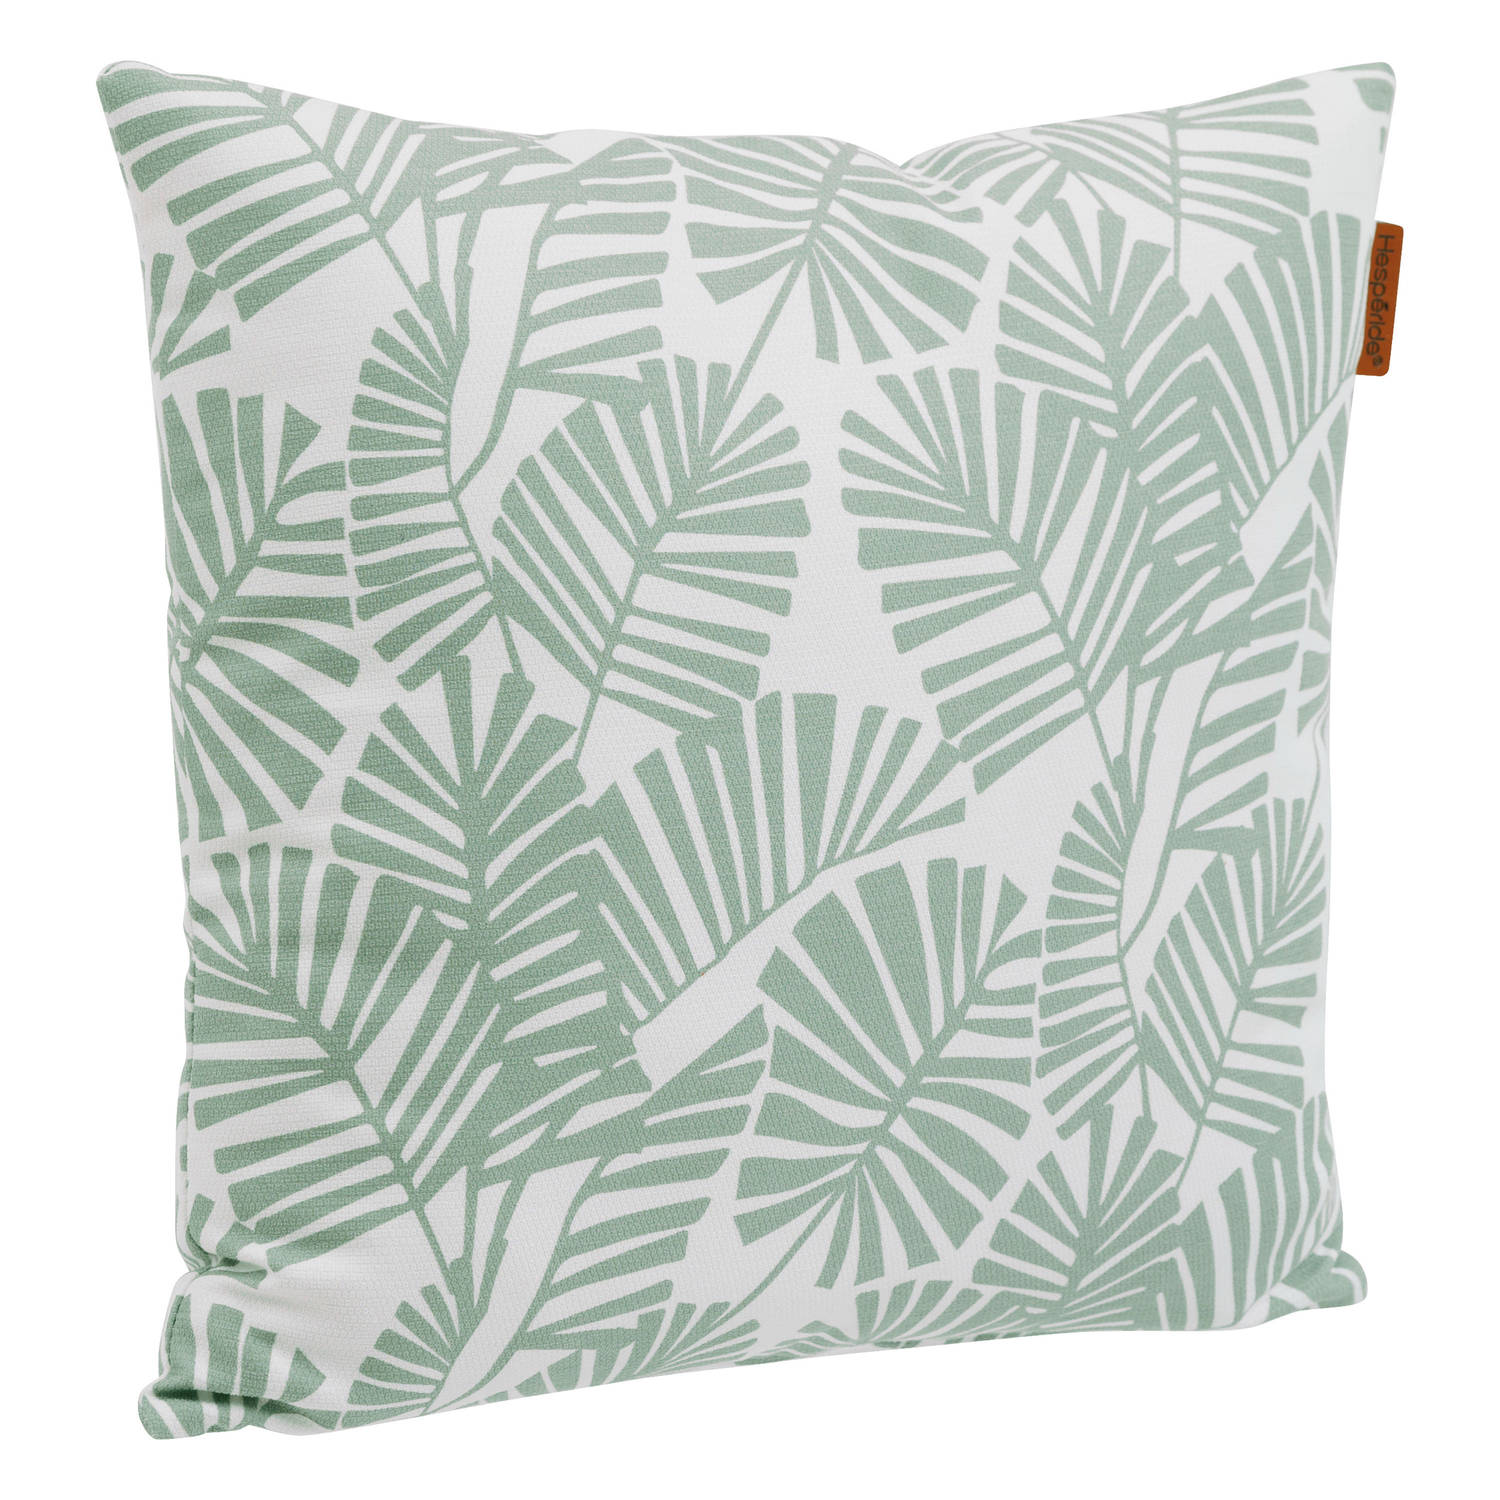 Bank-sier-tuin kussens voor binnen en buiten in palm print 40 x 40 x 10 cm tuinstoelkussens